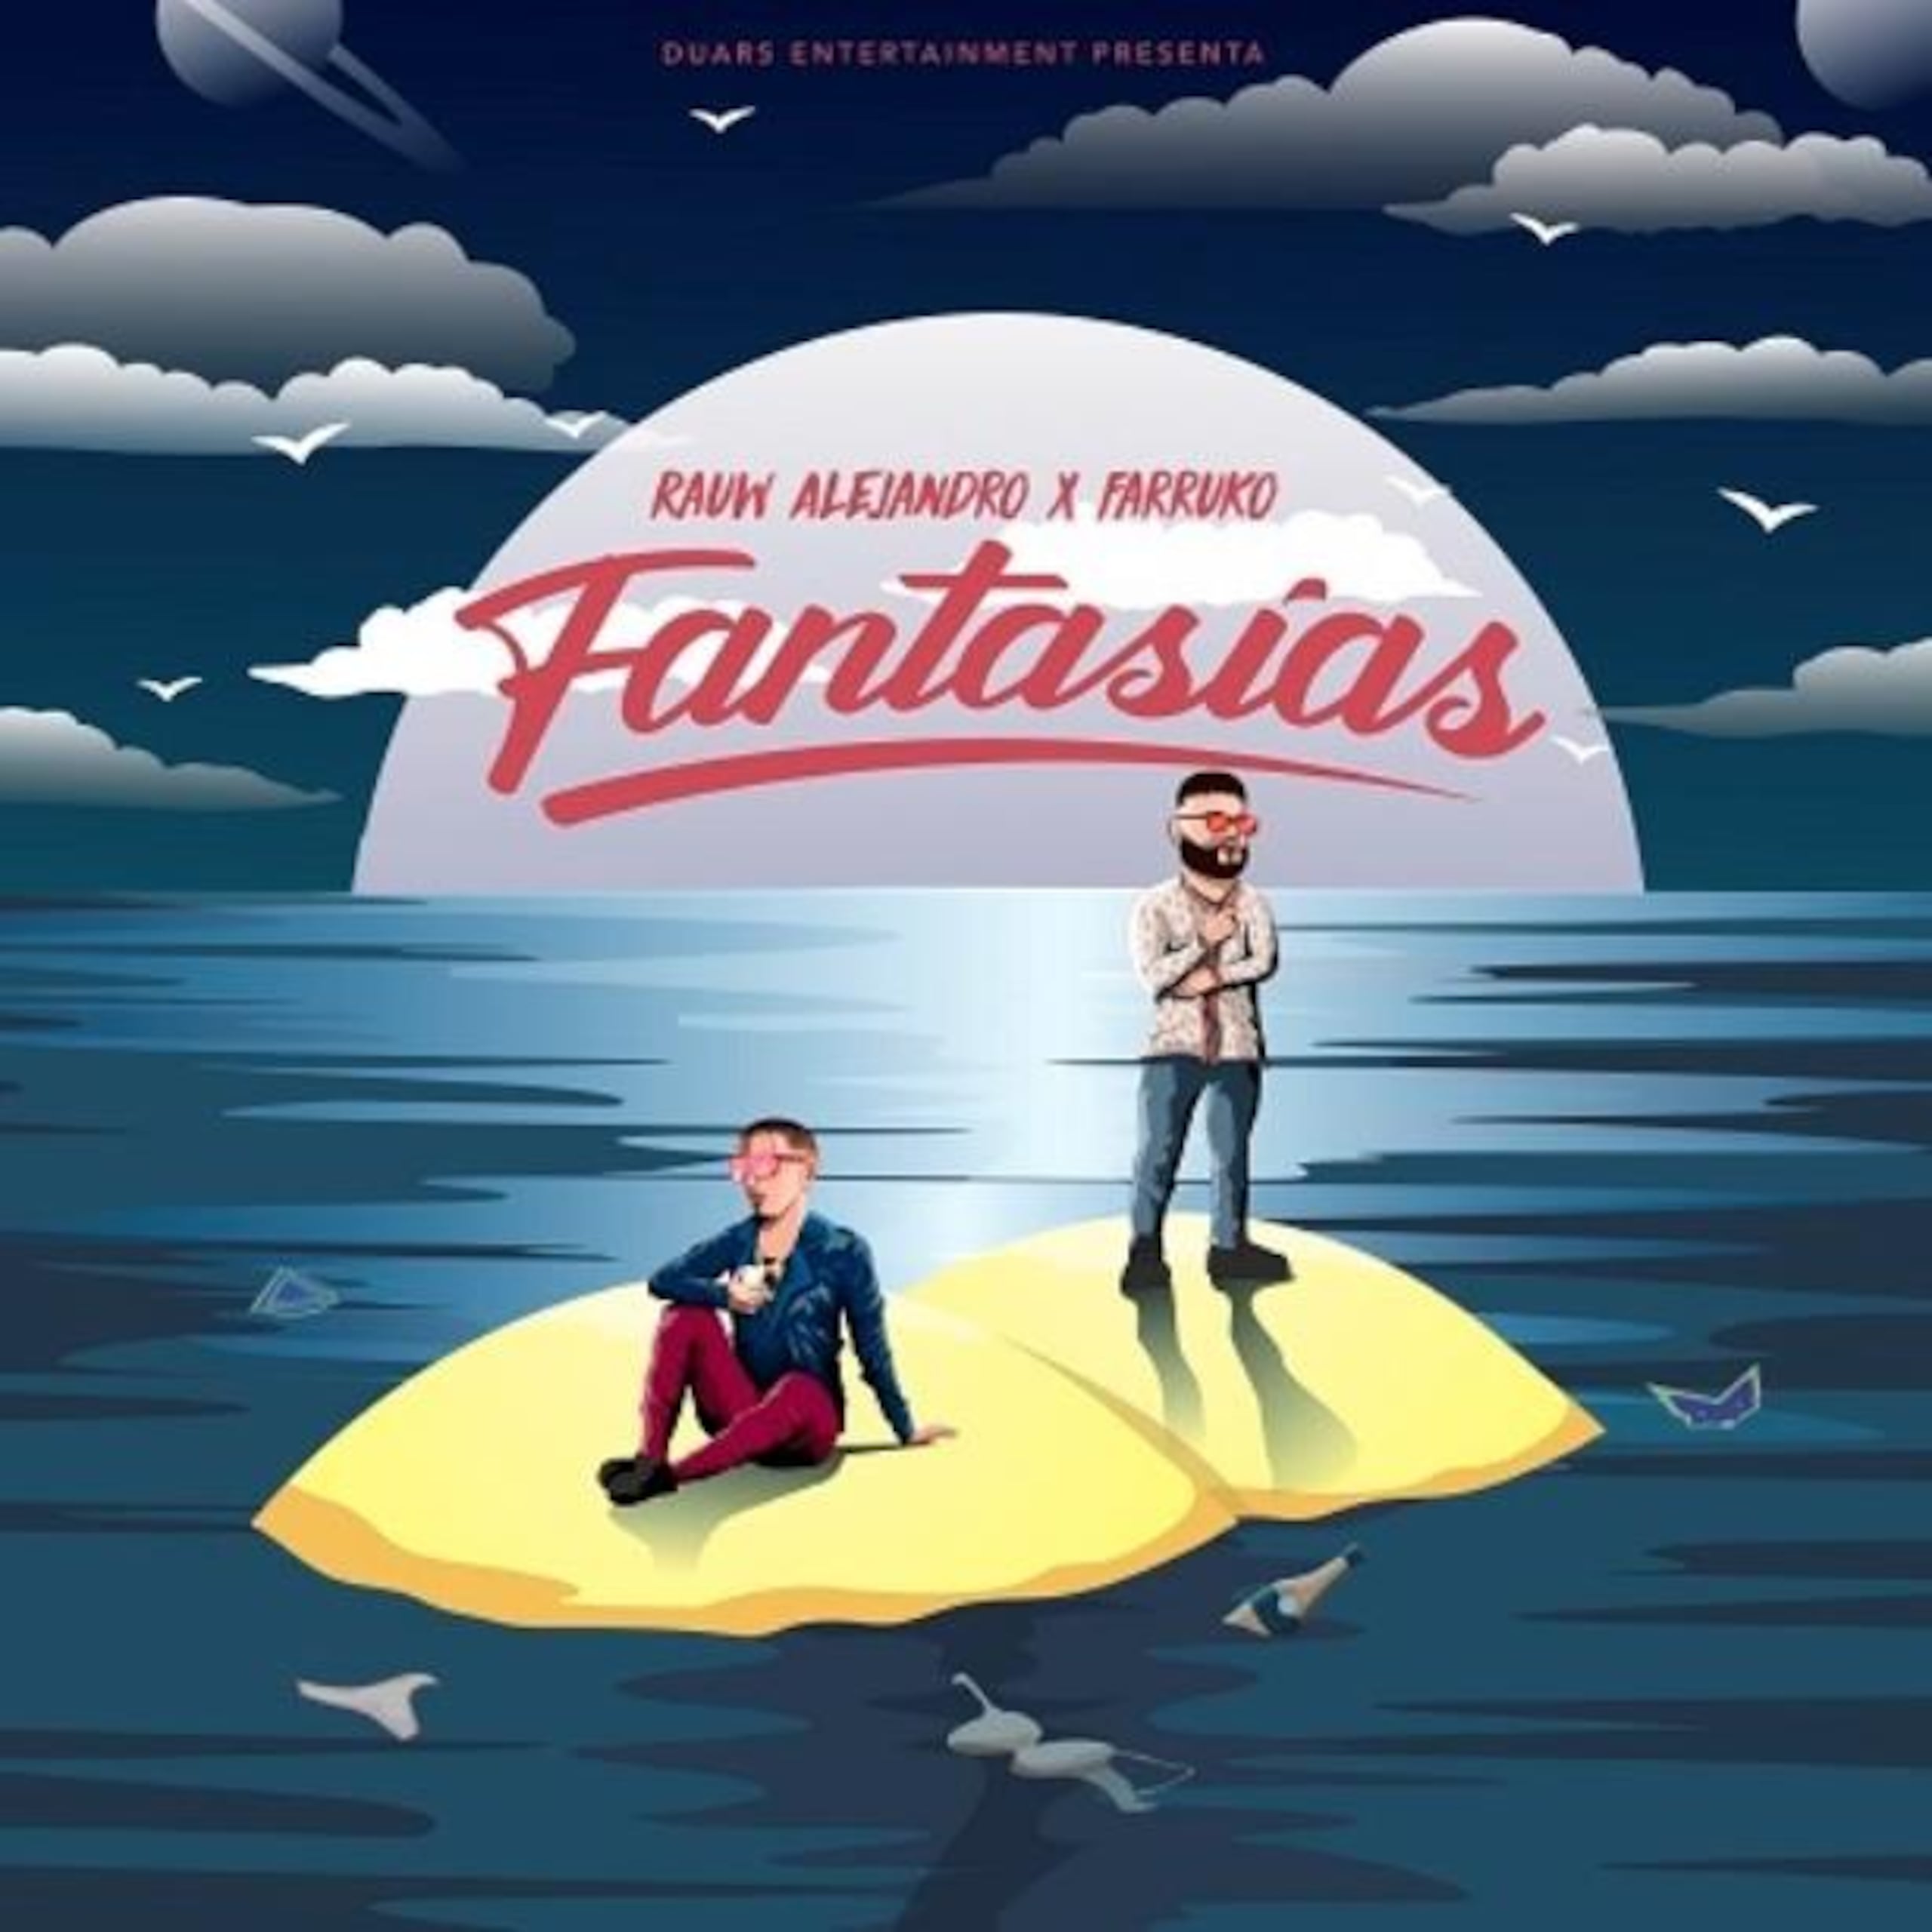 Carátula del sencillo "Fantasías", un tema de Rauw Alejandro en colaboración con Farruko. Suministrada